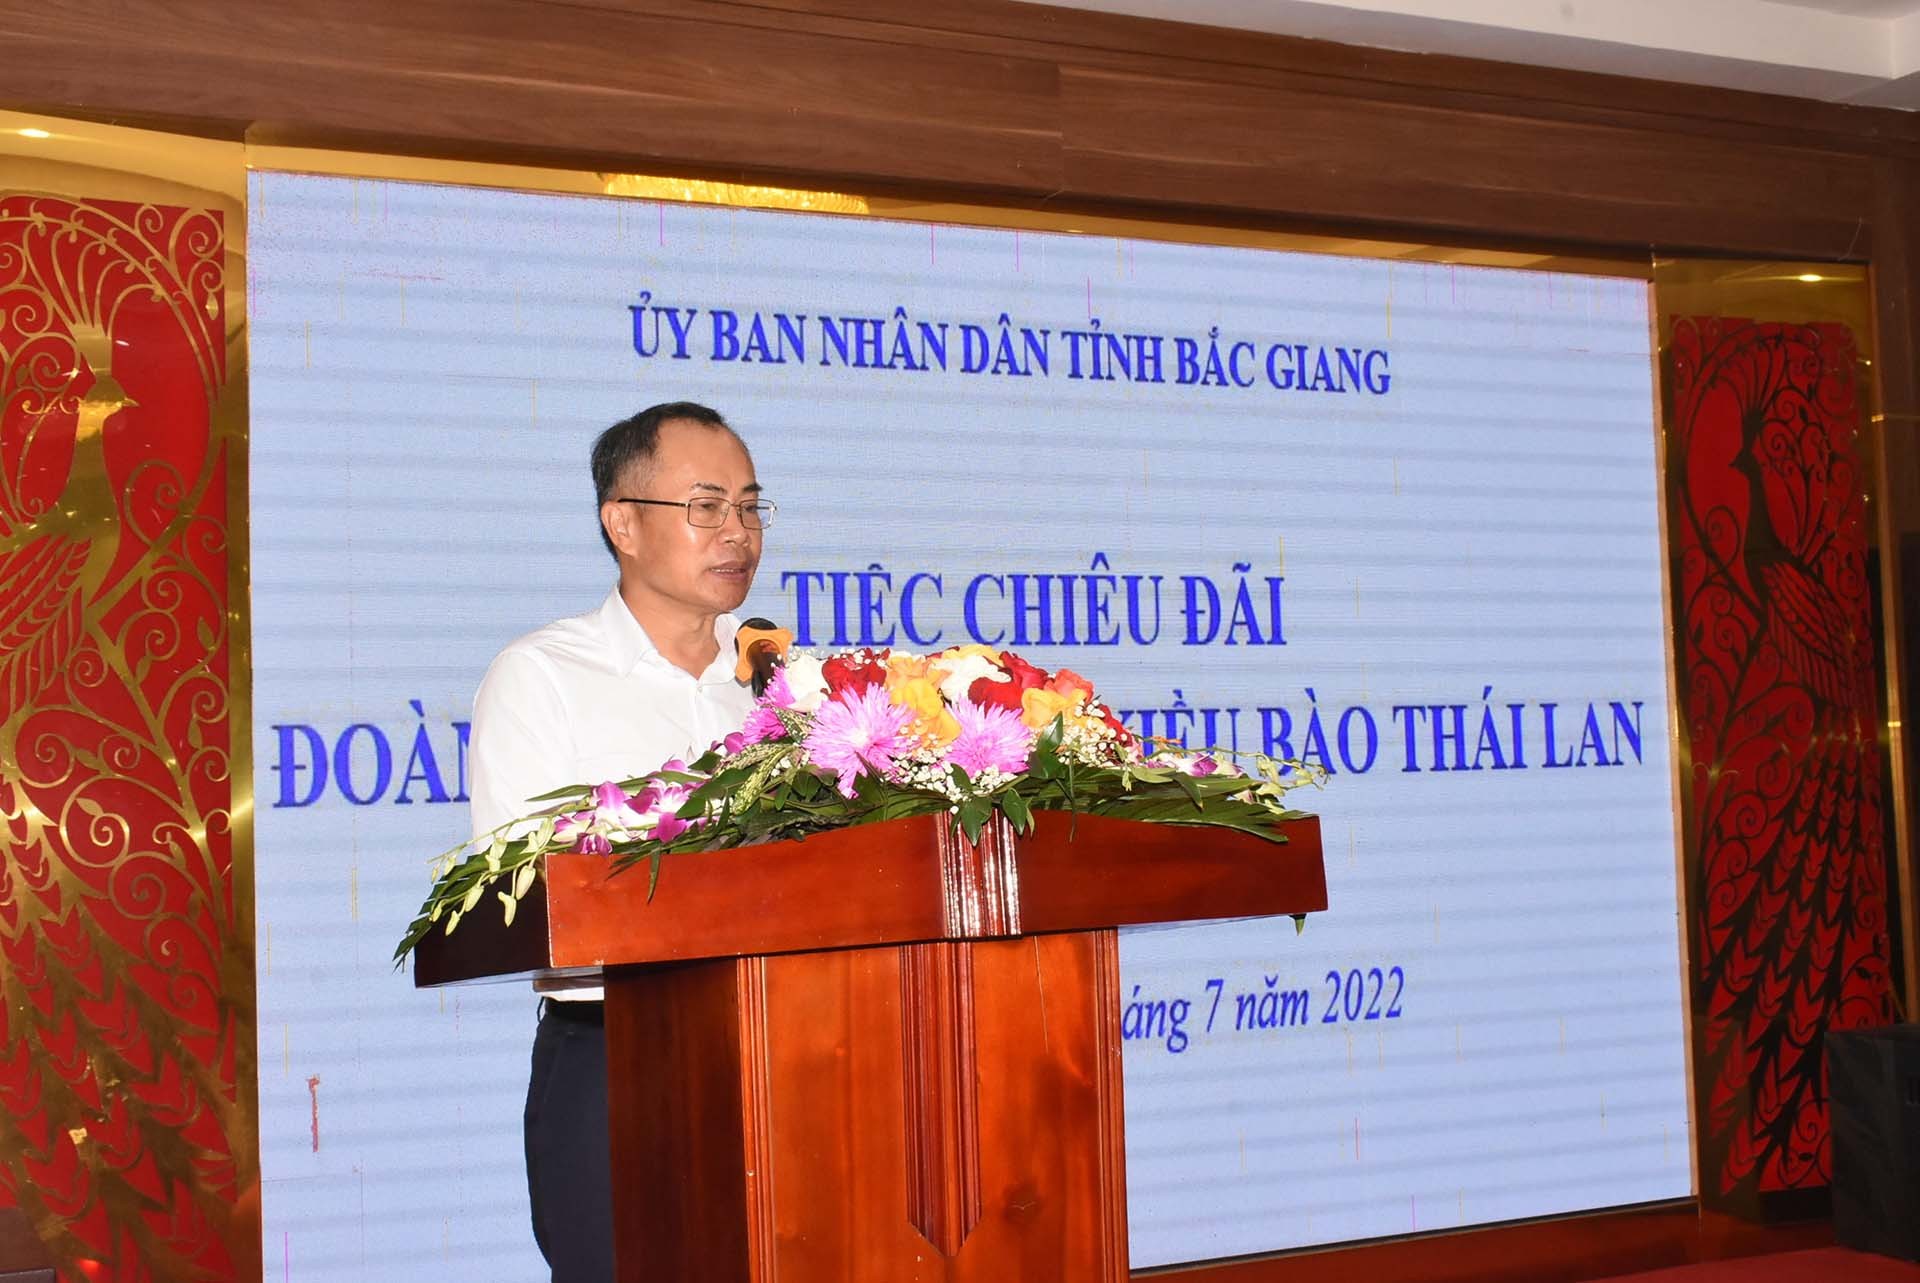 Doanh nghiệp tỉnh Bắc Giang và Thái Lan kết nối, tìm kiếm cơ hội hợp tác